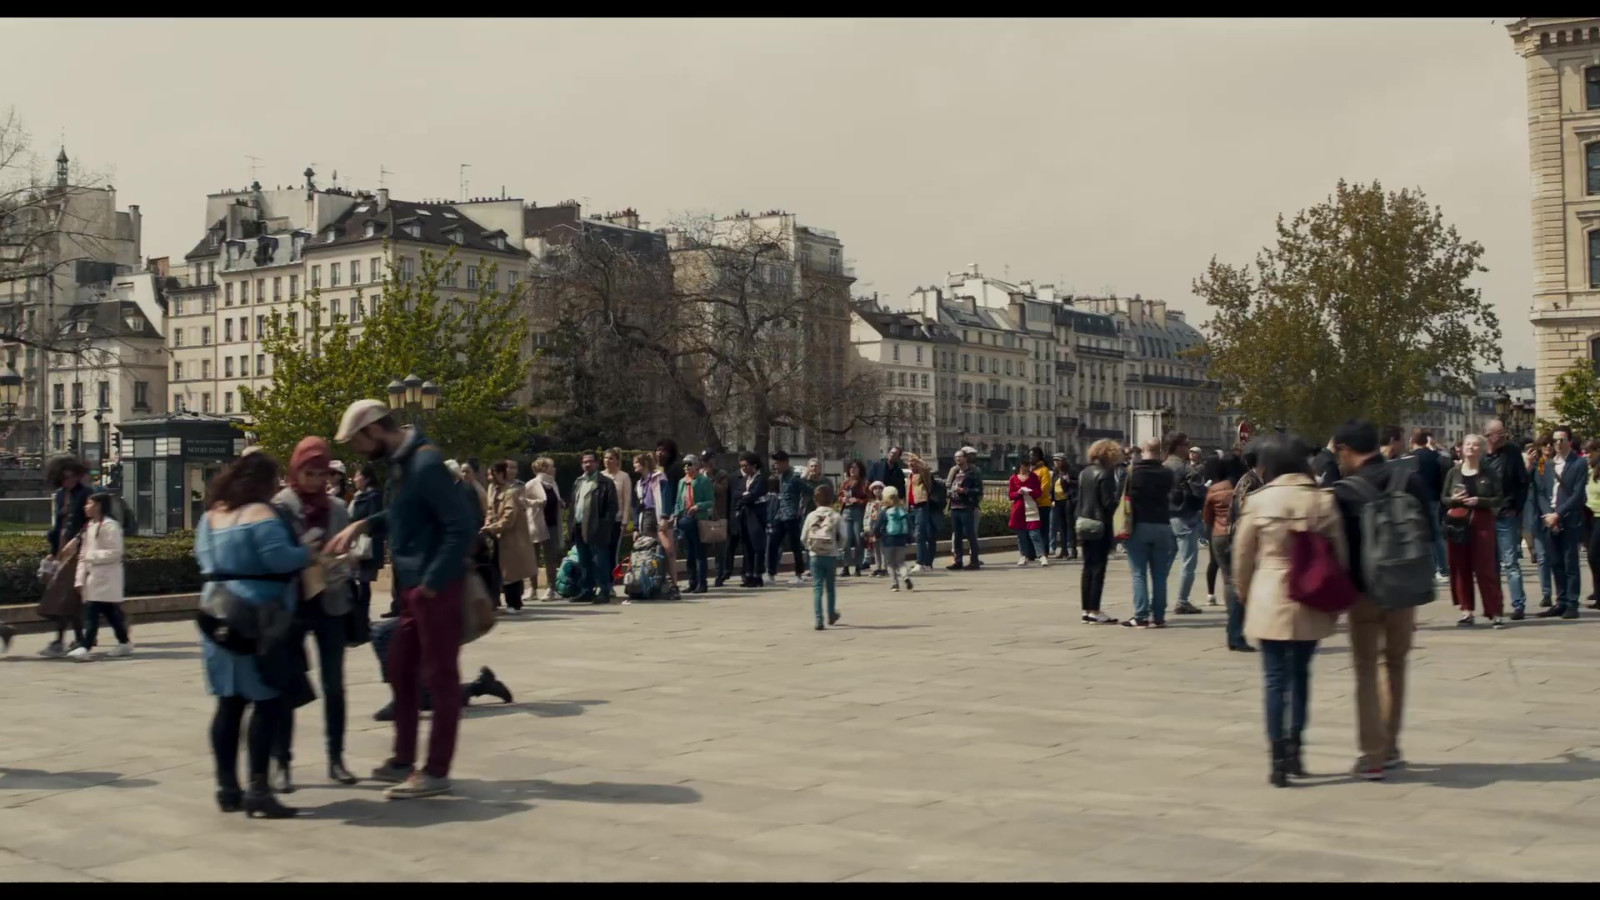 育碧新VR游戏将于3月16日上线 基于纪录片《熄灭的巴黎圣母院》